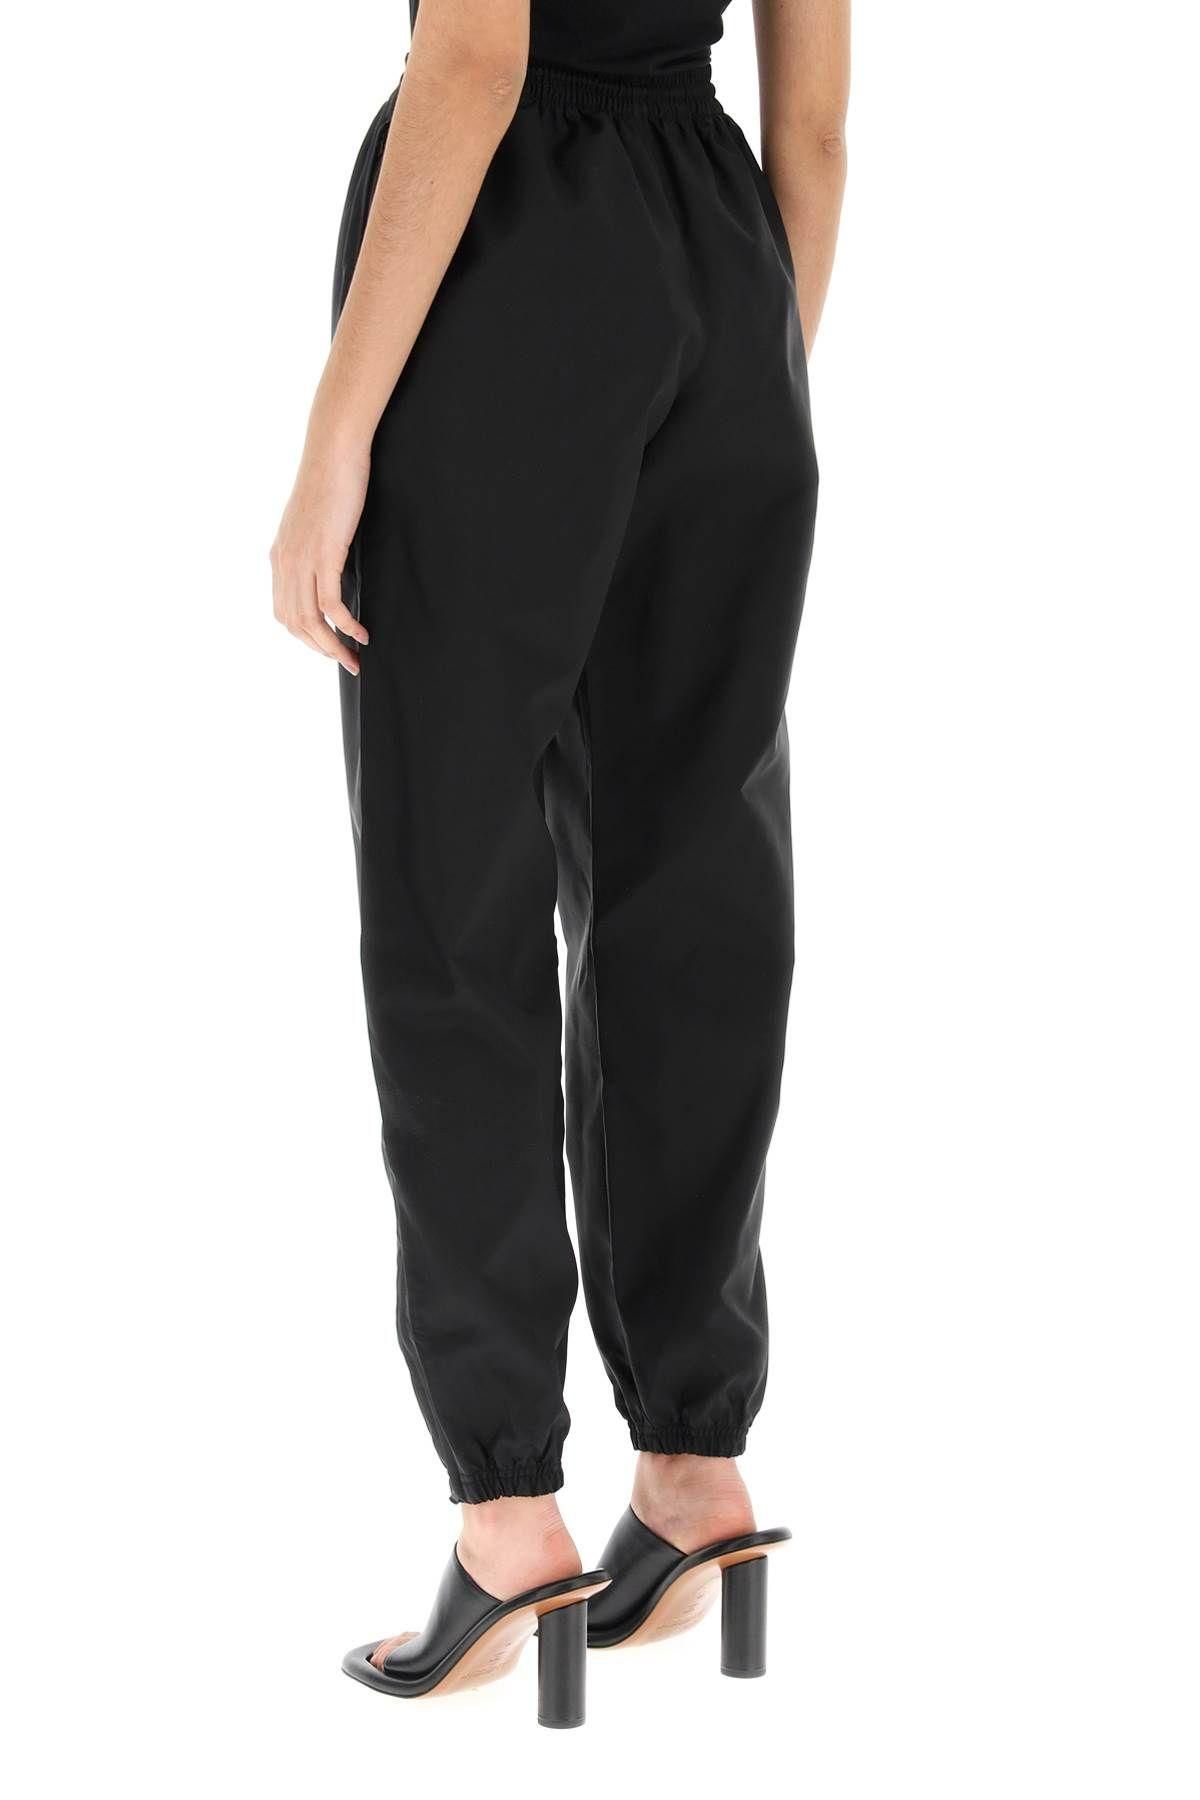 NEW Wardrobe.nyc high-waisted stirrup leggings W2035R06 BLACK